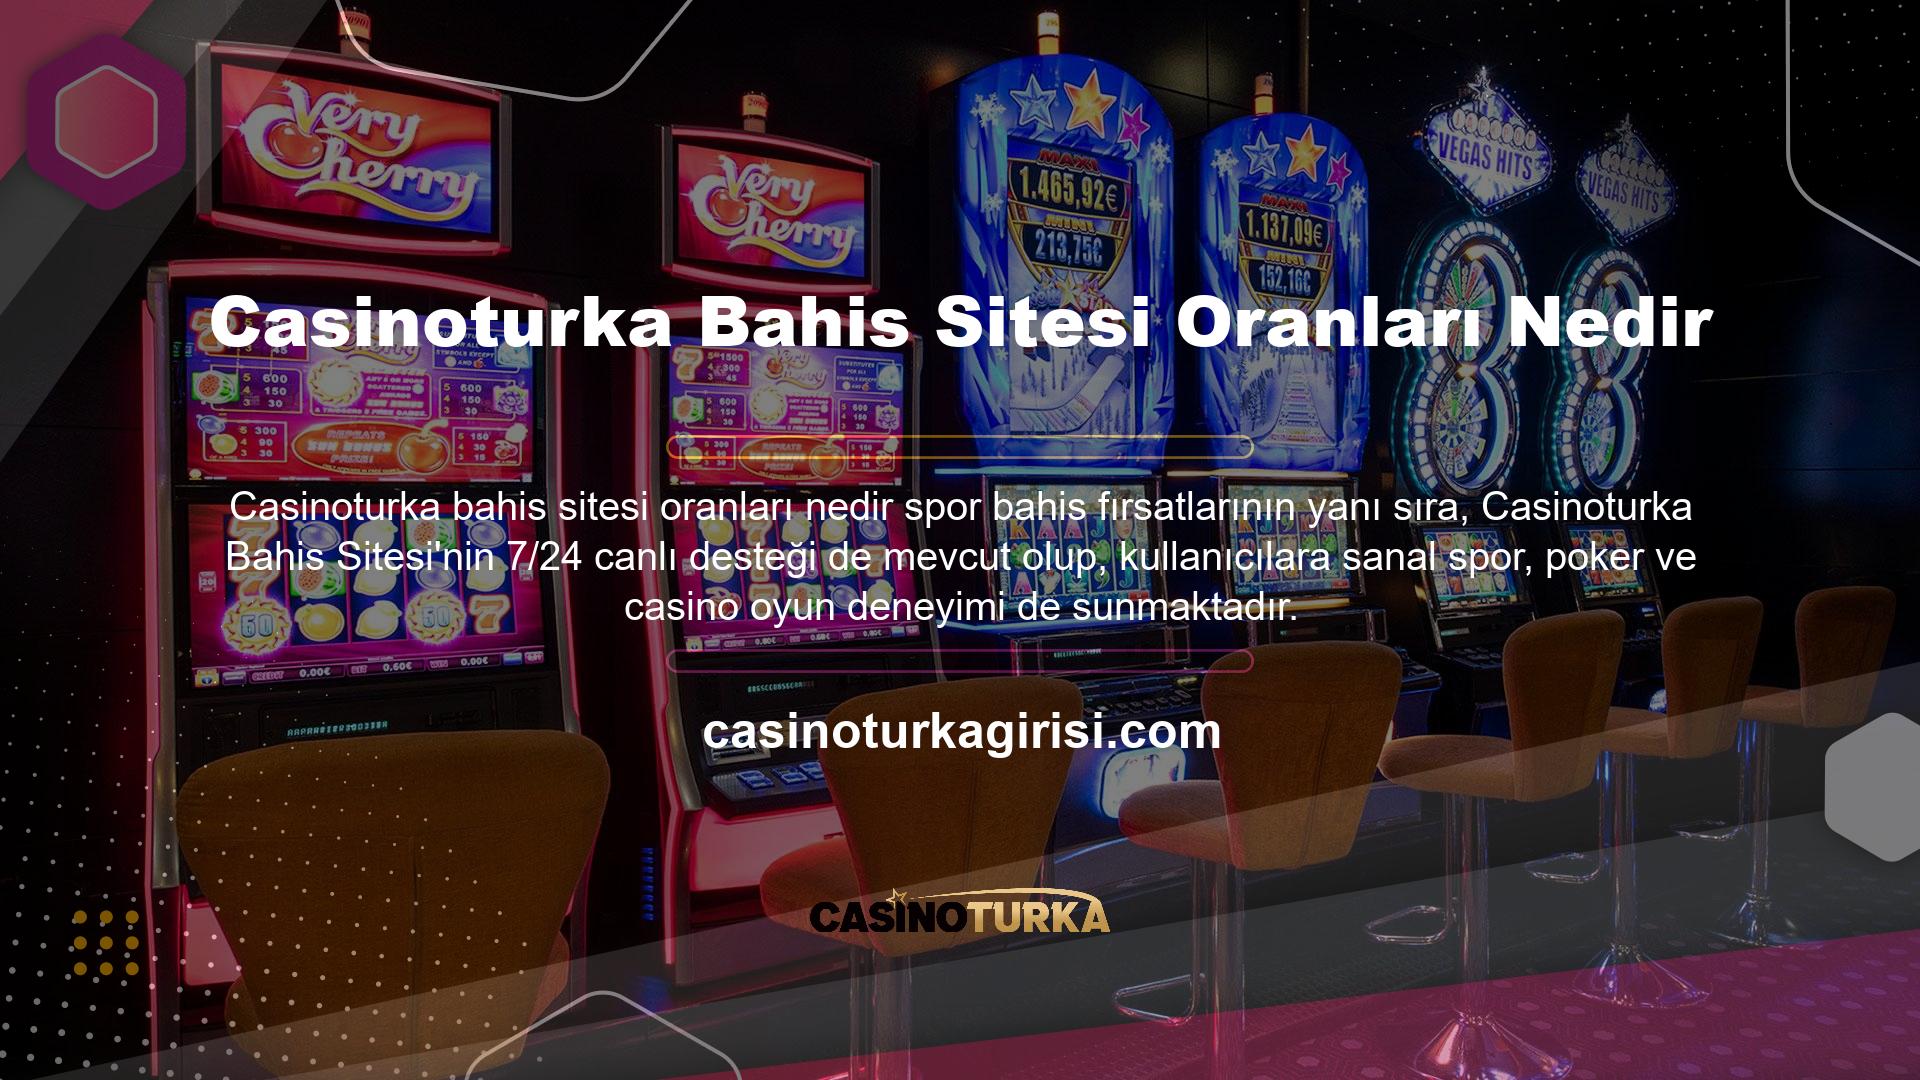 Casinoturka Rulet Oyunu Casinoturka casino oyunlarında tanınmak için çabalamaya devam ediyor